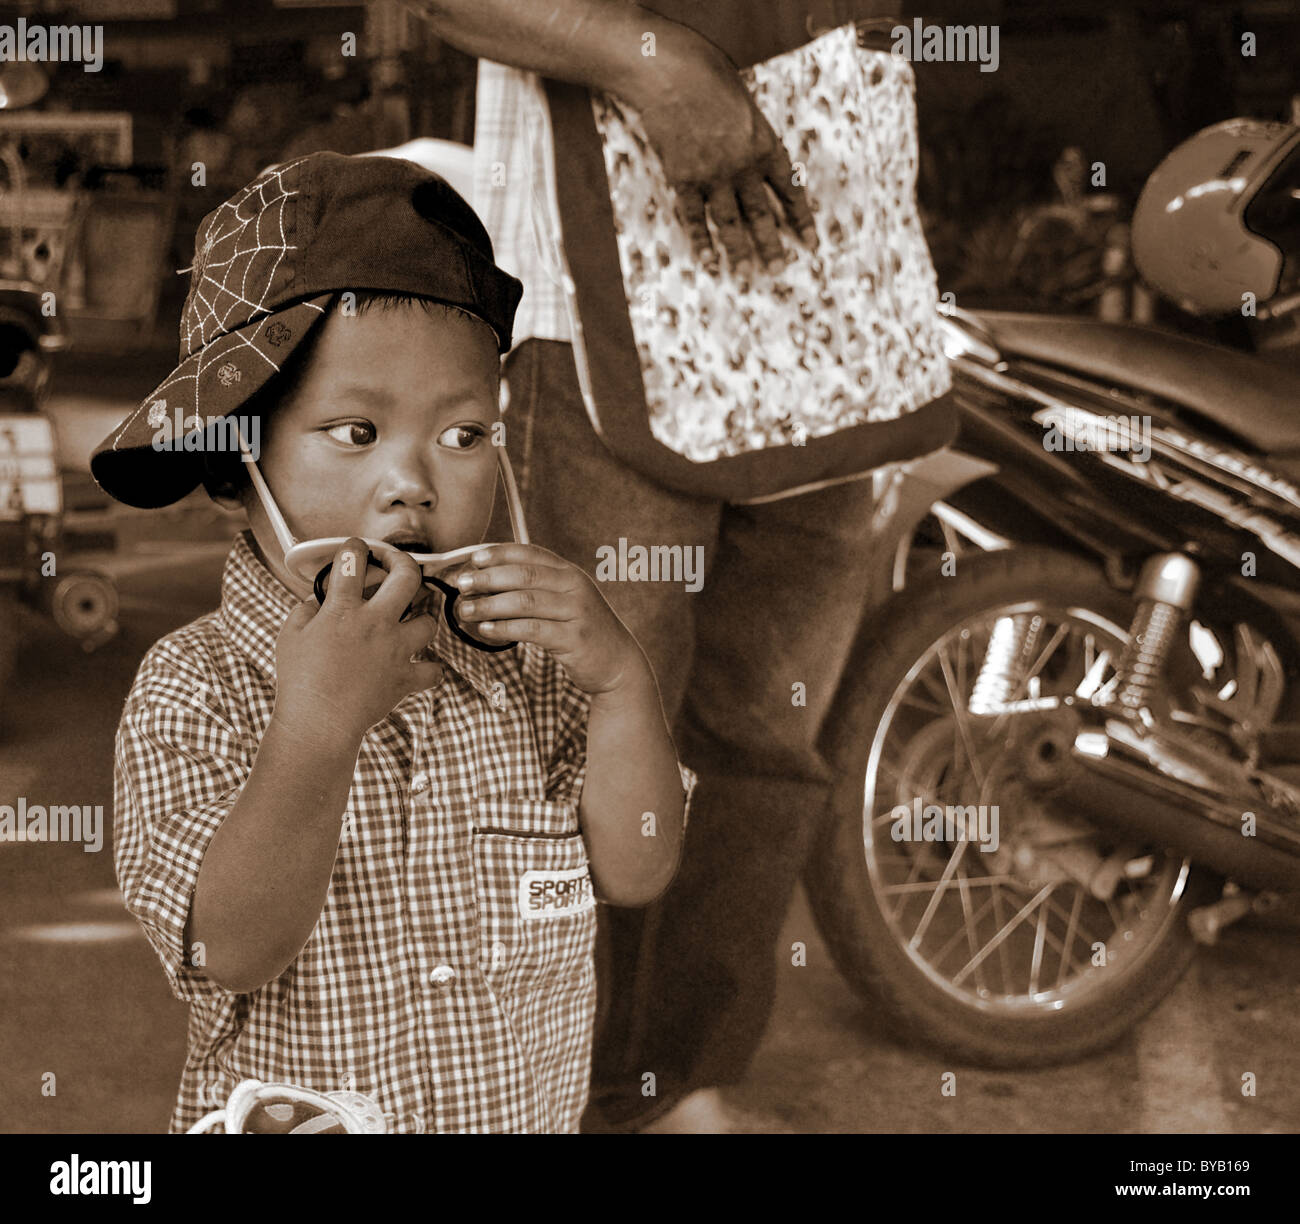 Sepia-toned photograph of a contemplative young Thai boy Stock Photo